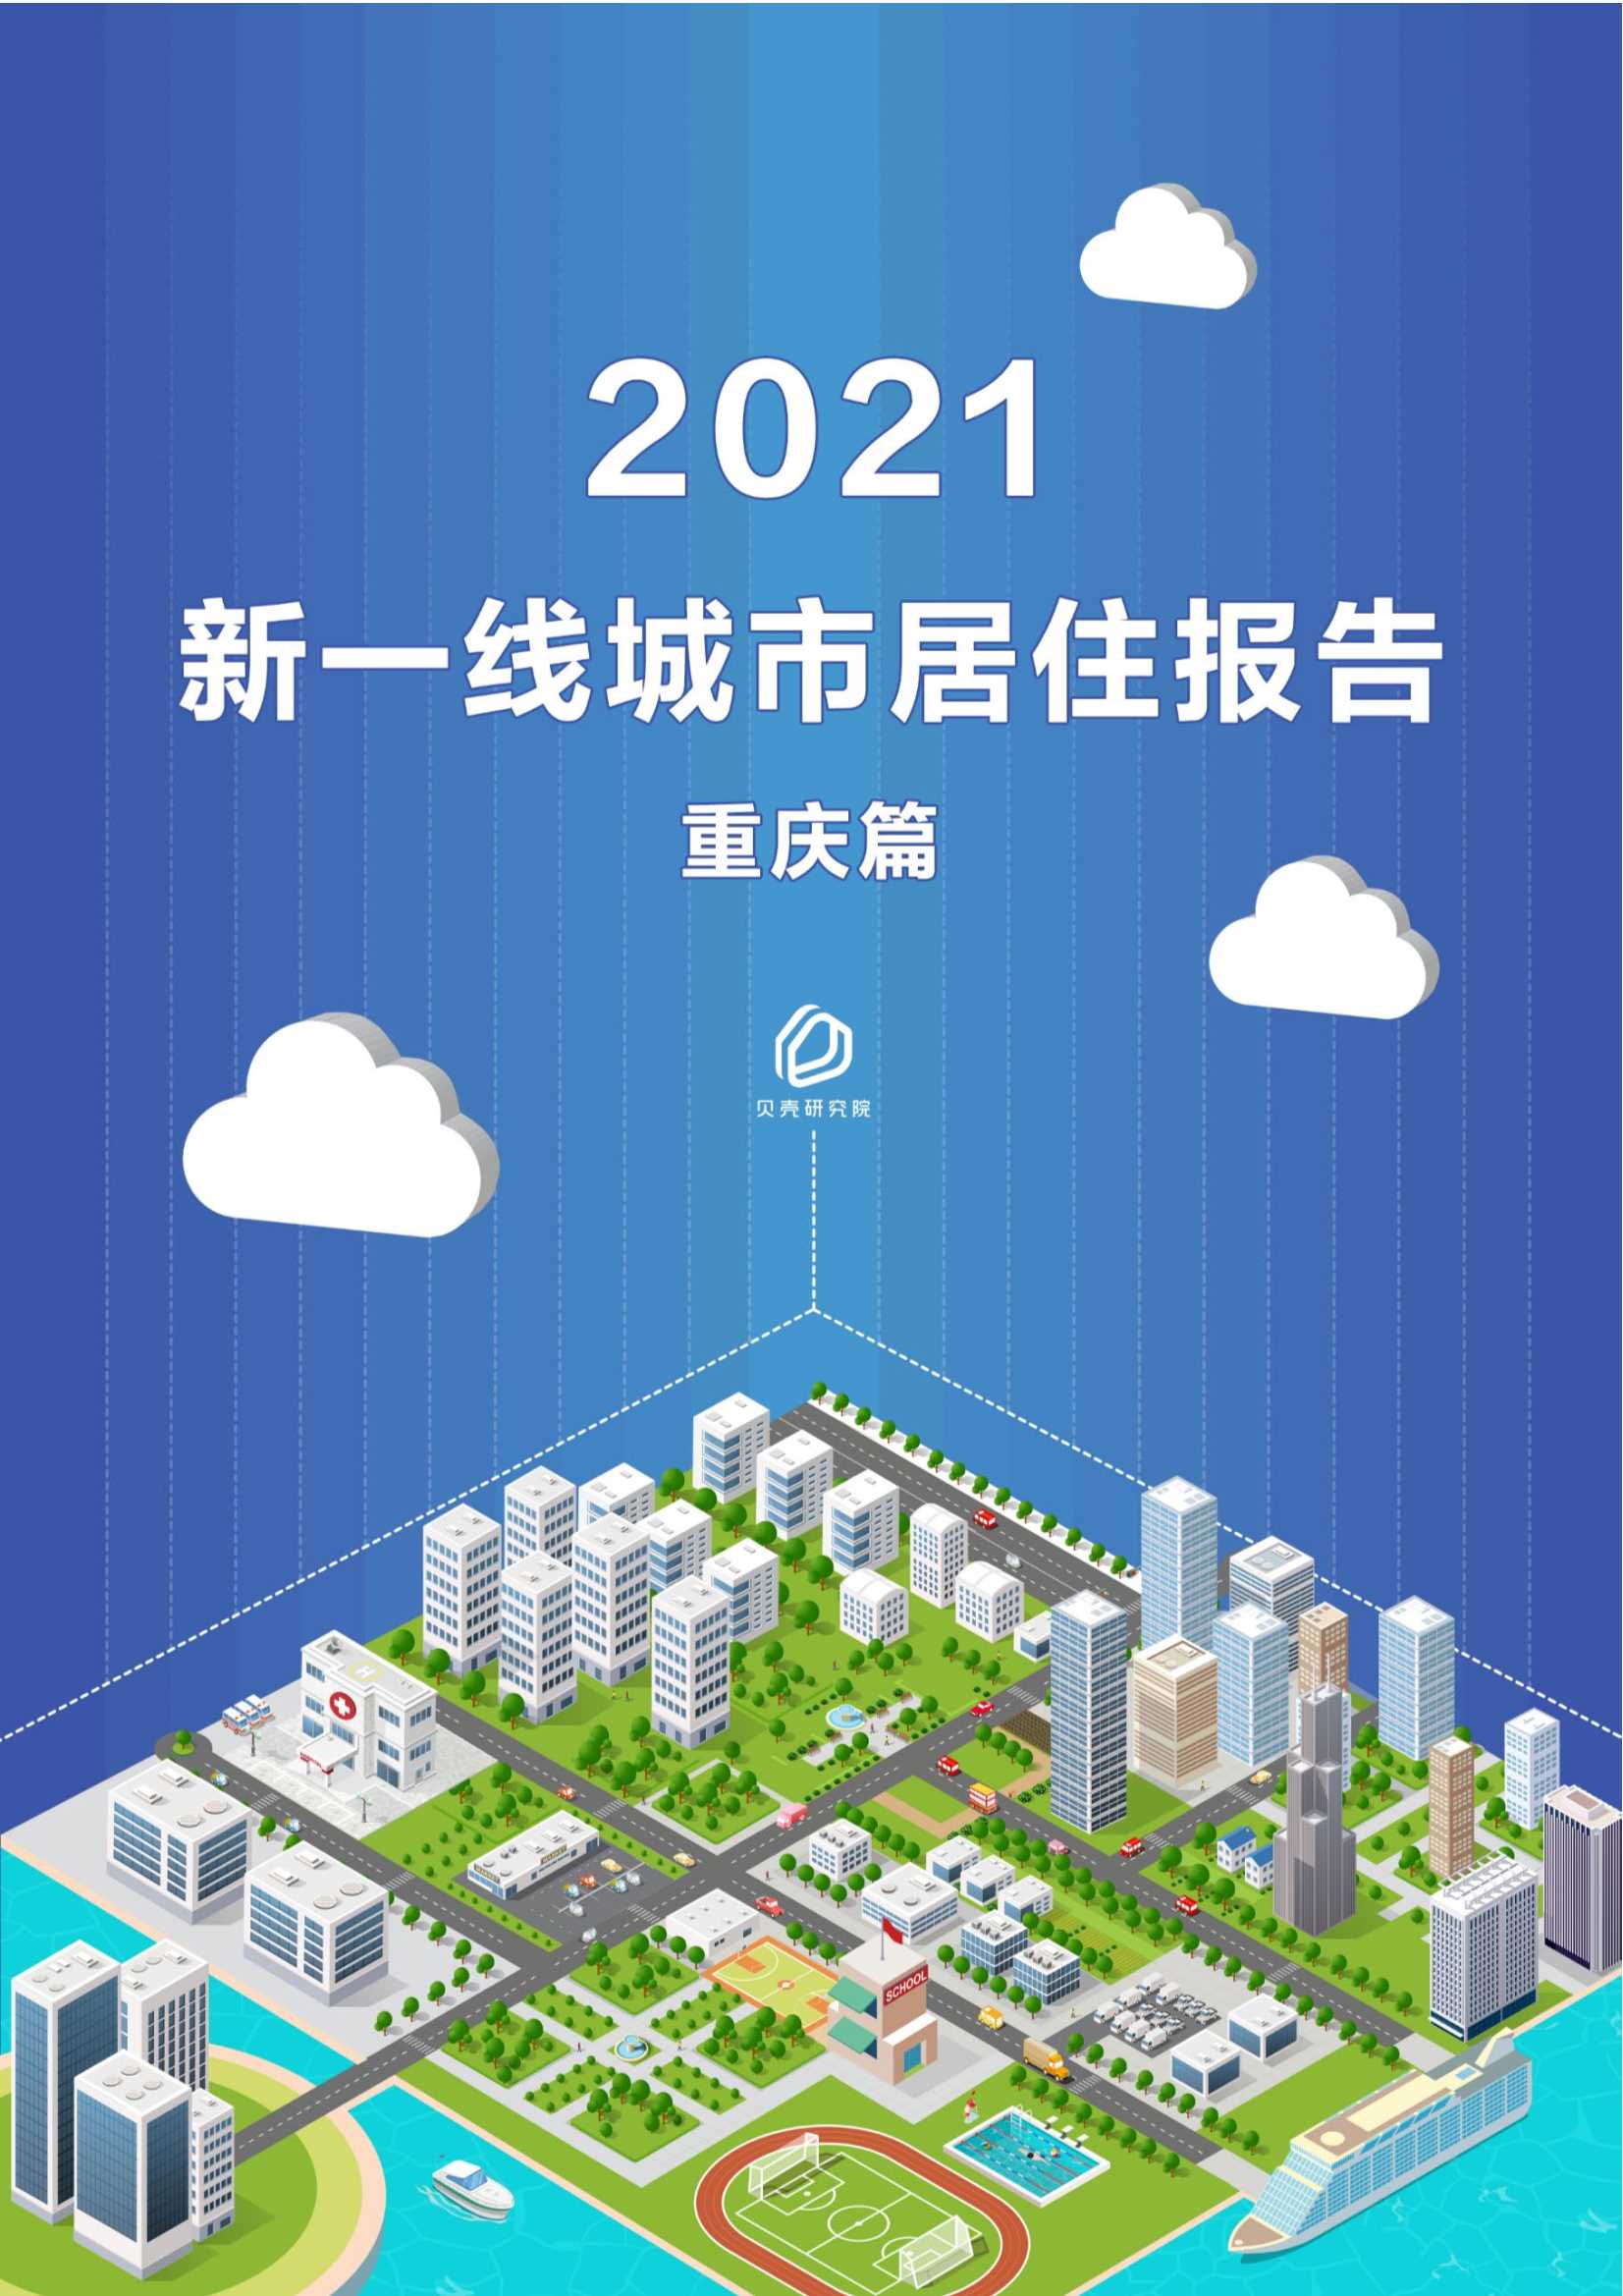 贝壳研究院-新一线城市居住报告重庆篇-2021.05-8页